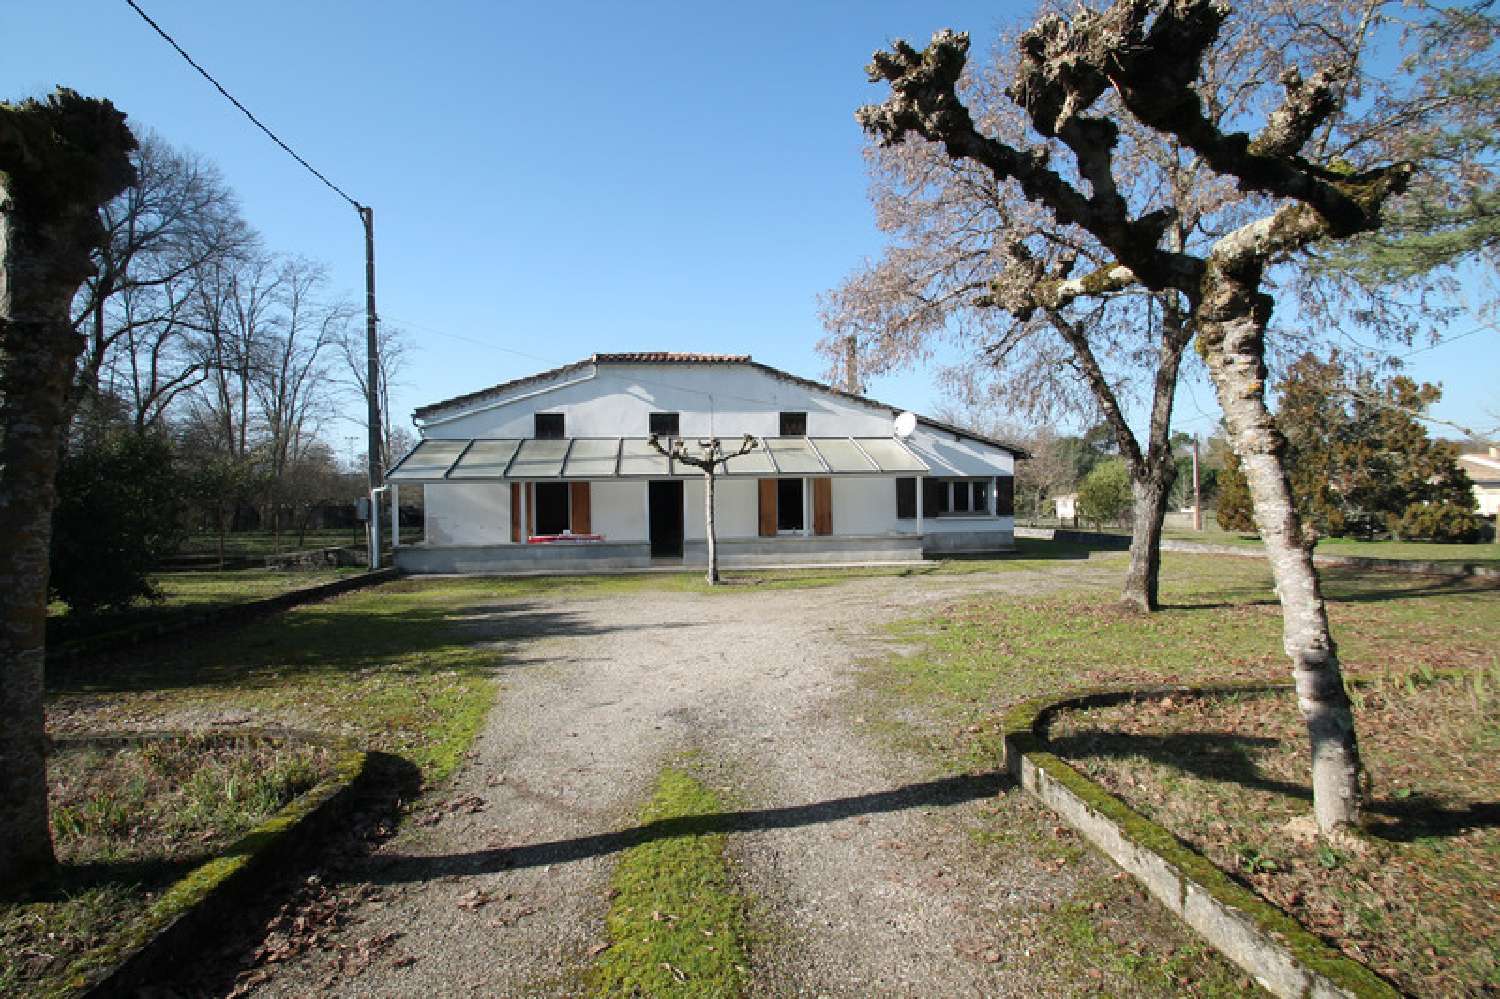  à vendre maison Casteljaloux Lot-et-Garonne 1